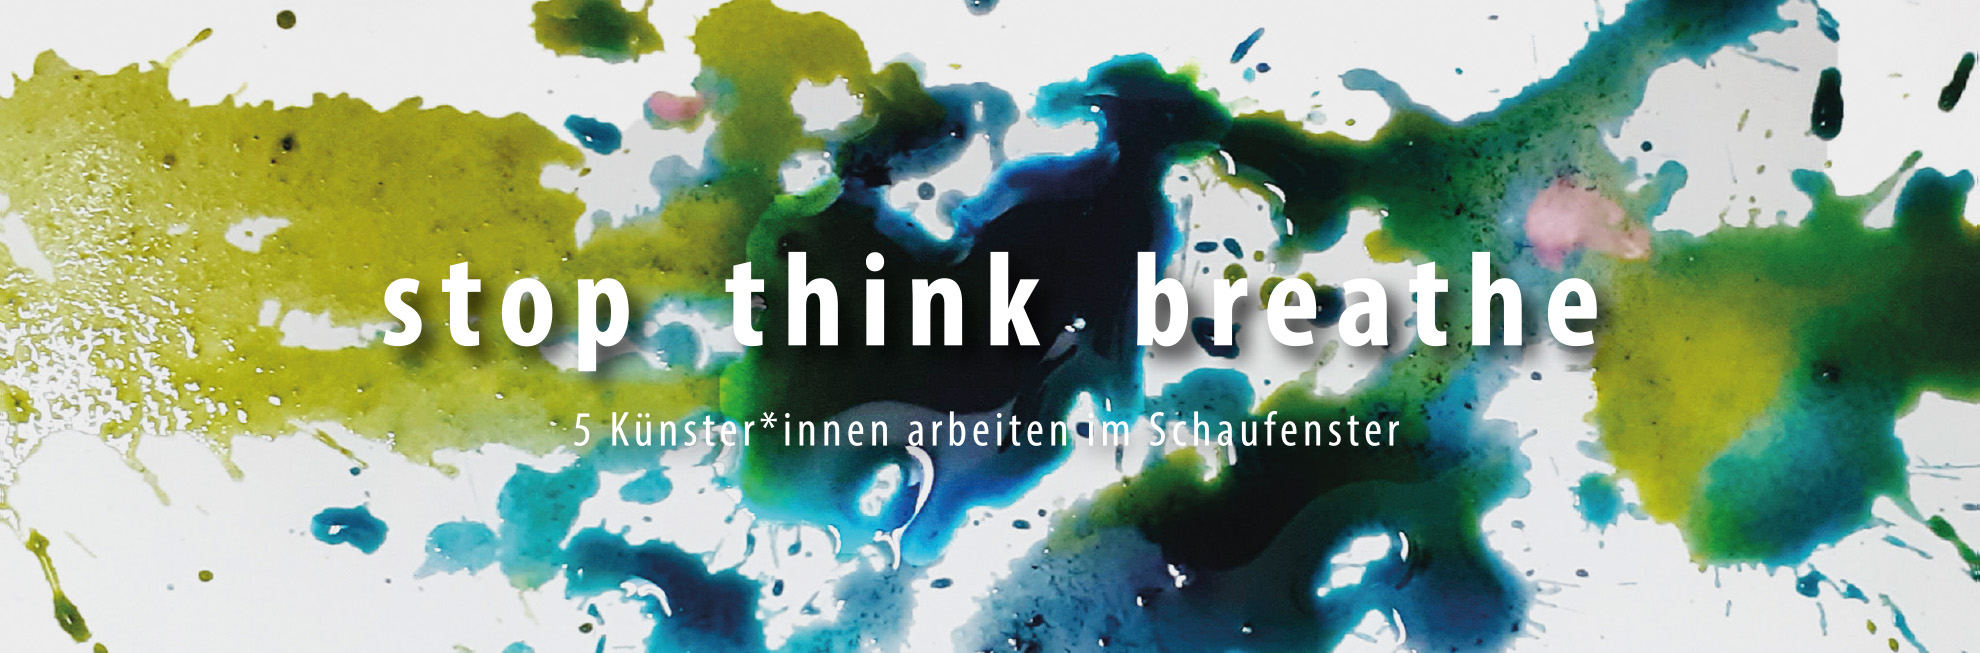 stop think breathe – Ausstellung, BBK Frankfurt